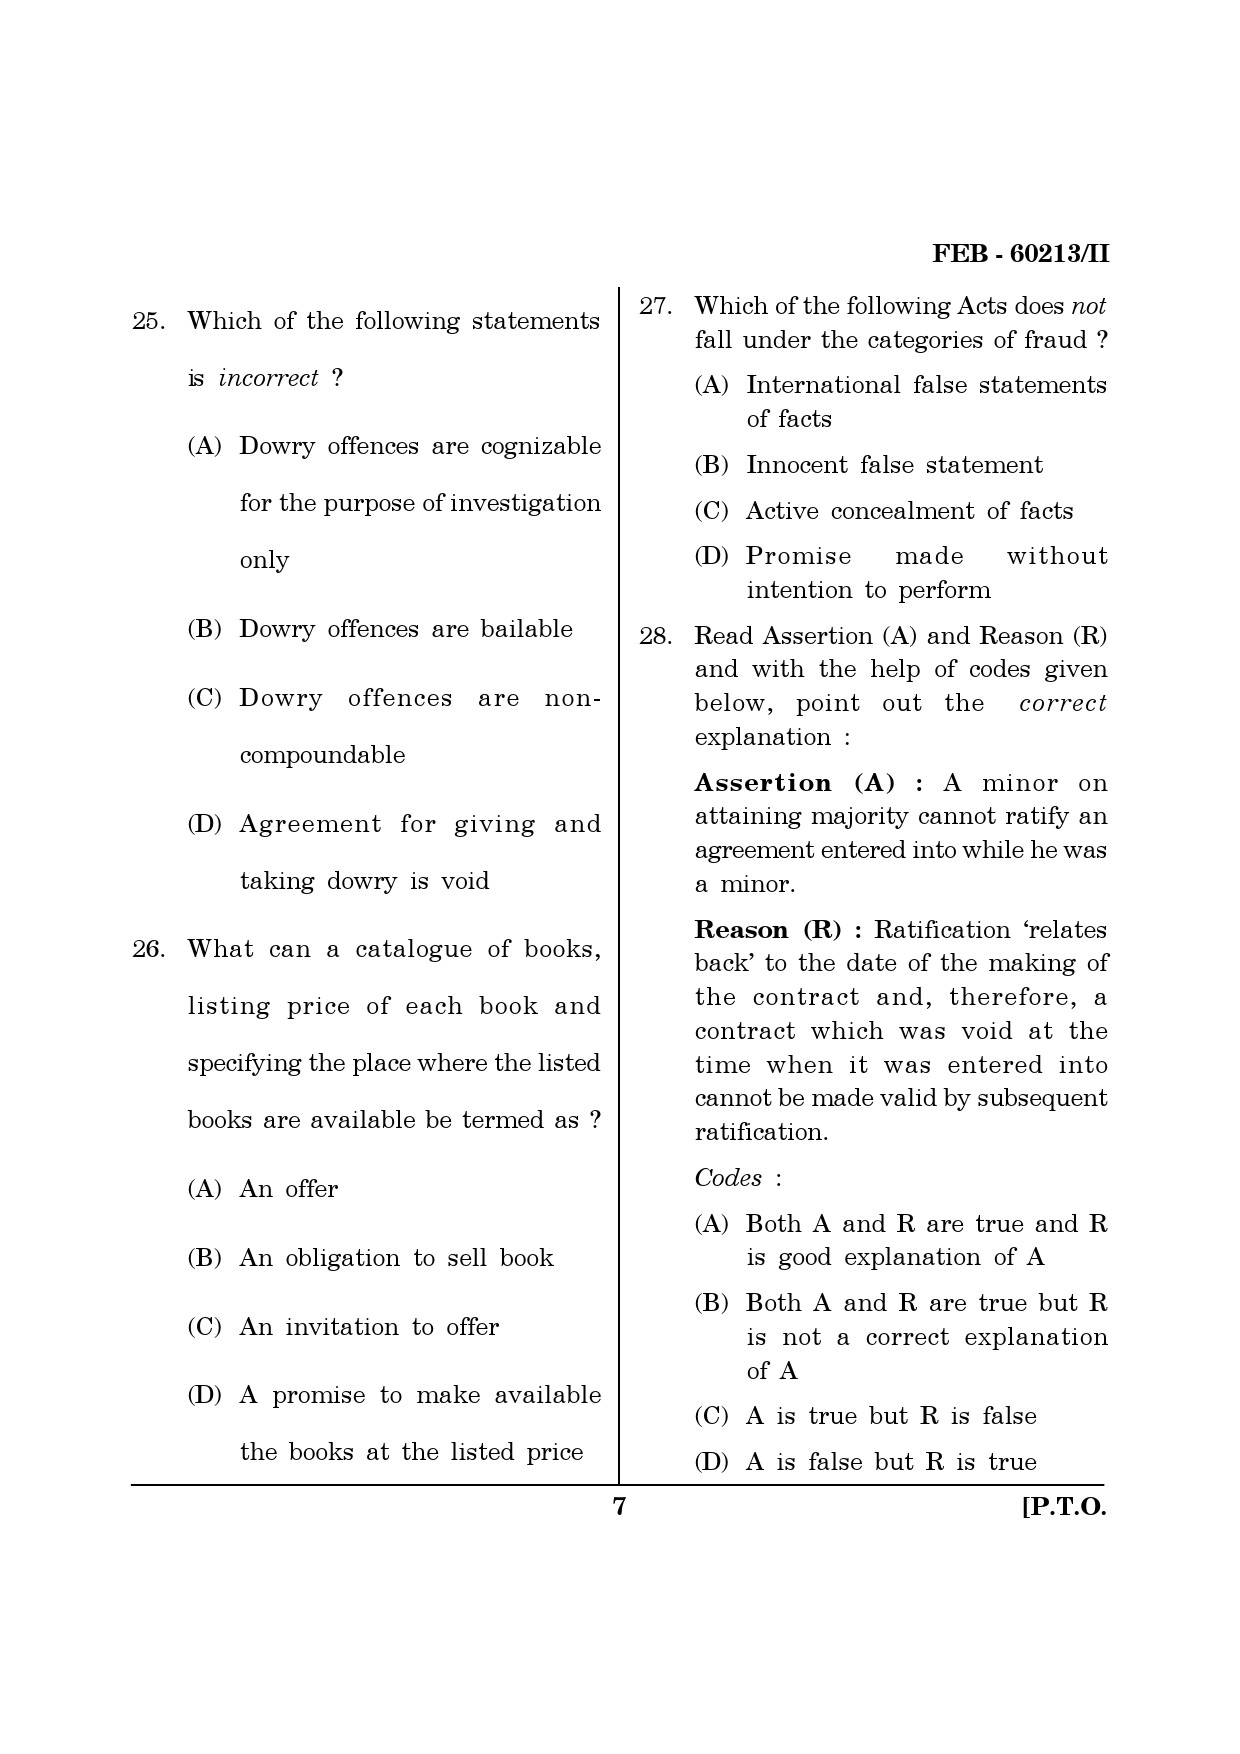 Maharashtra SET Law Question Paper II February 2013 7